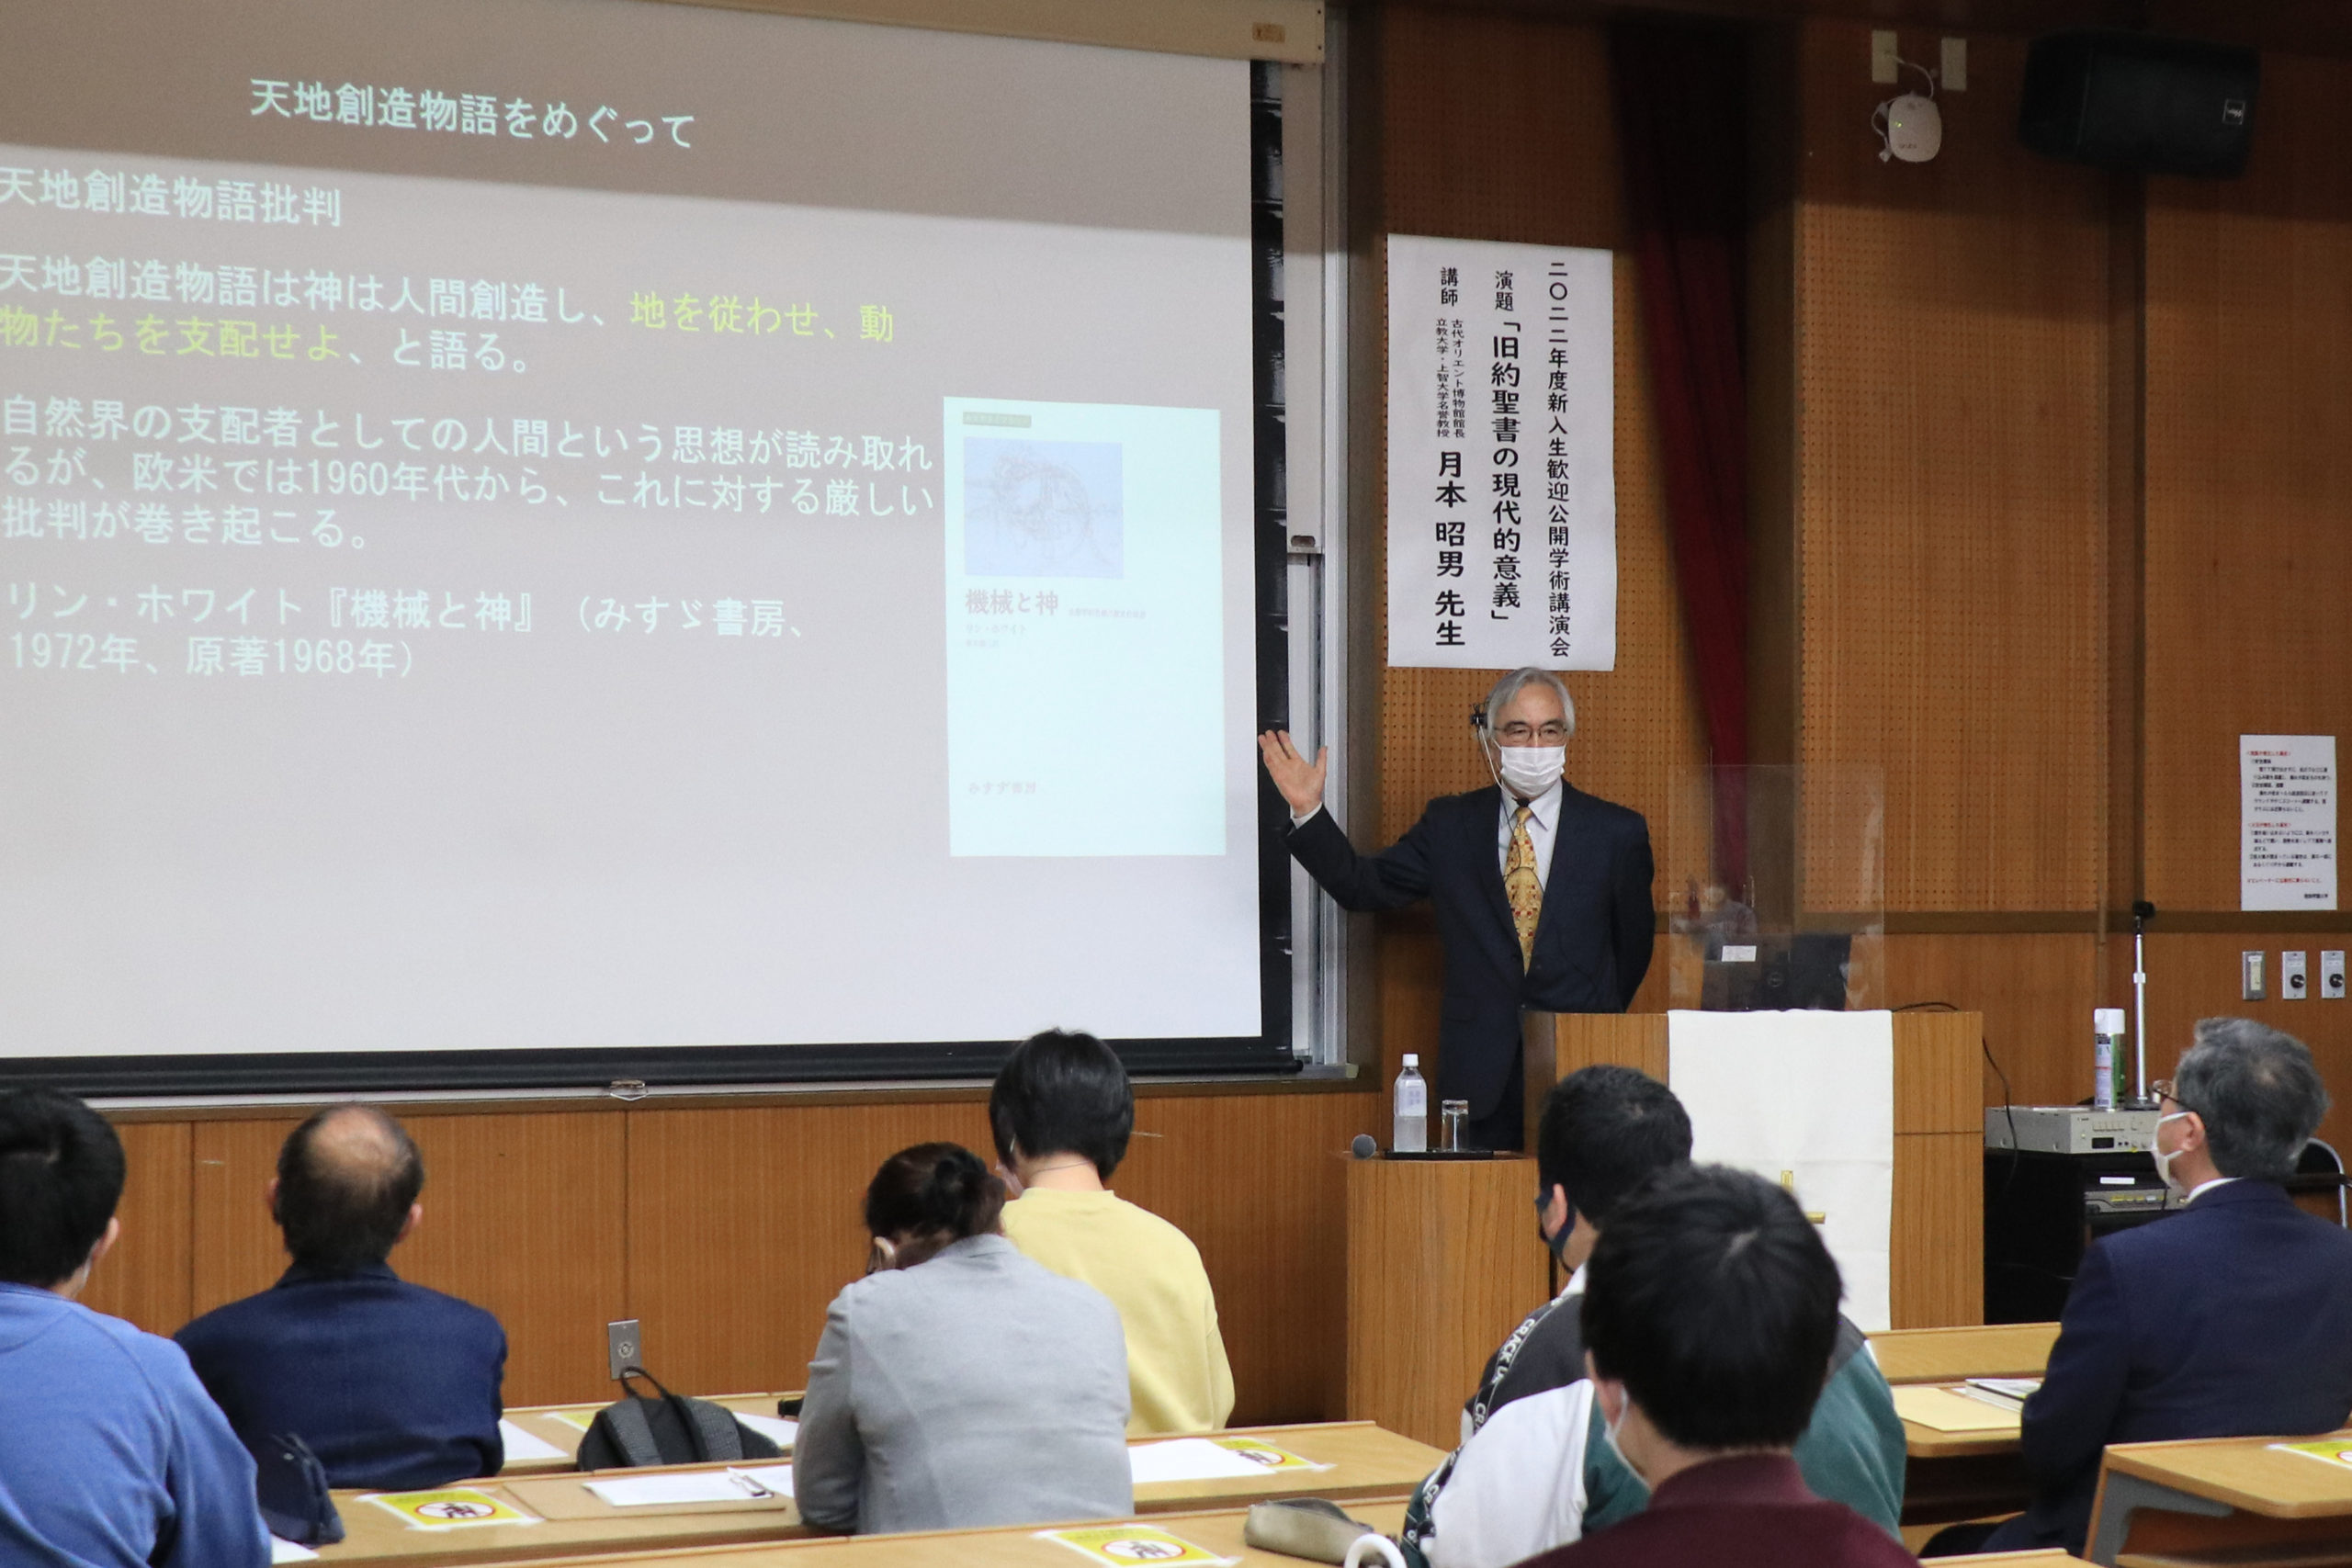 新入生歓迎公開学術講演会では、月本昭男先生にご講演いただきました